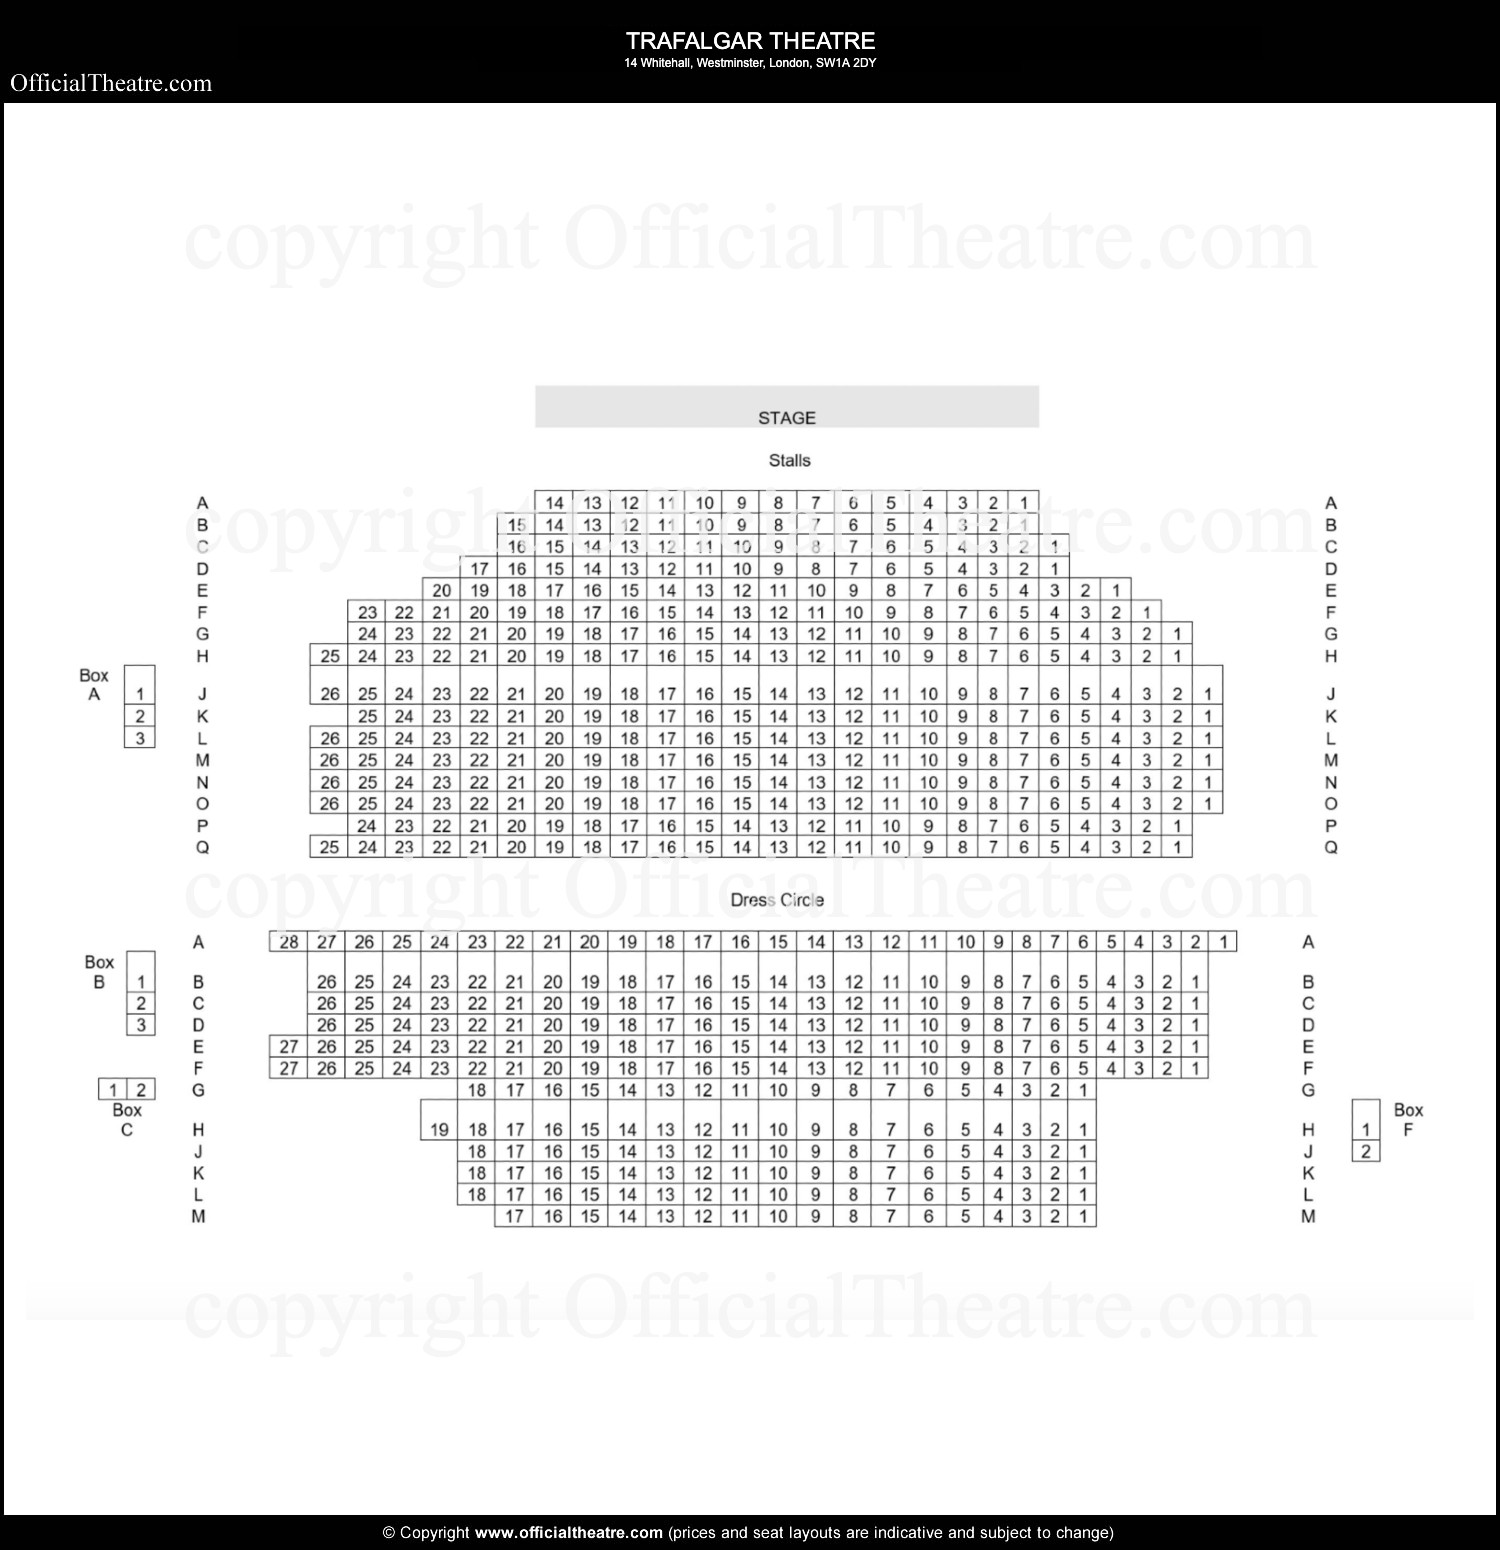 Trafalgar Theatre seating plan